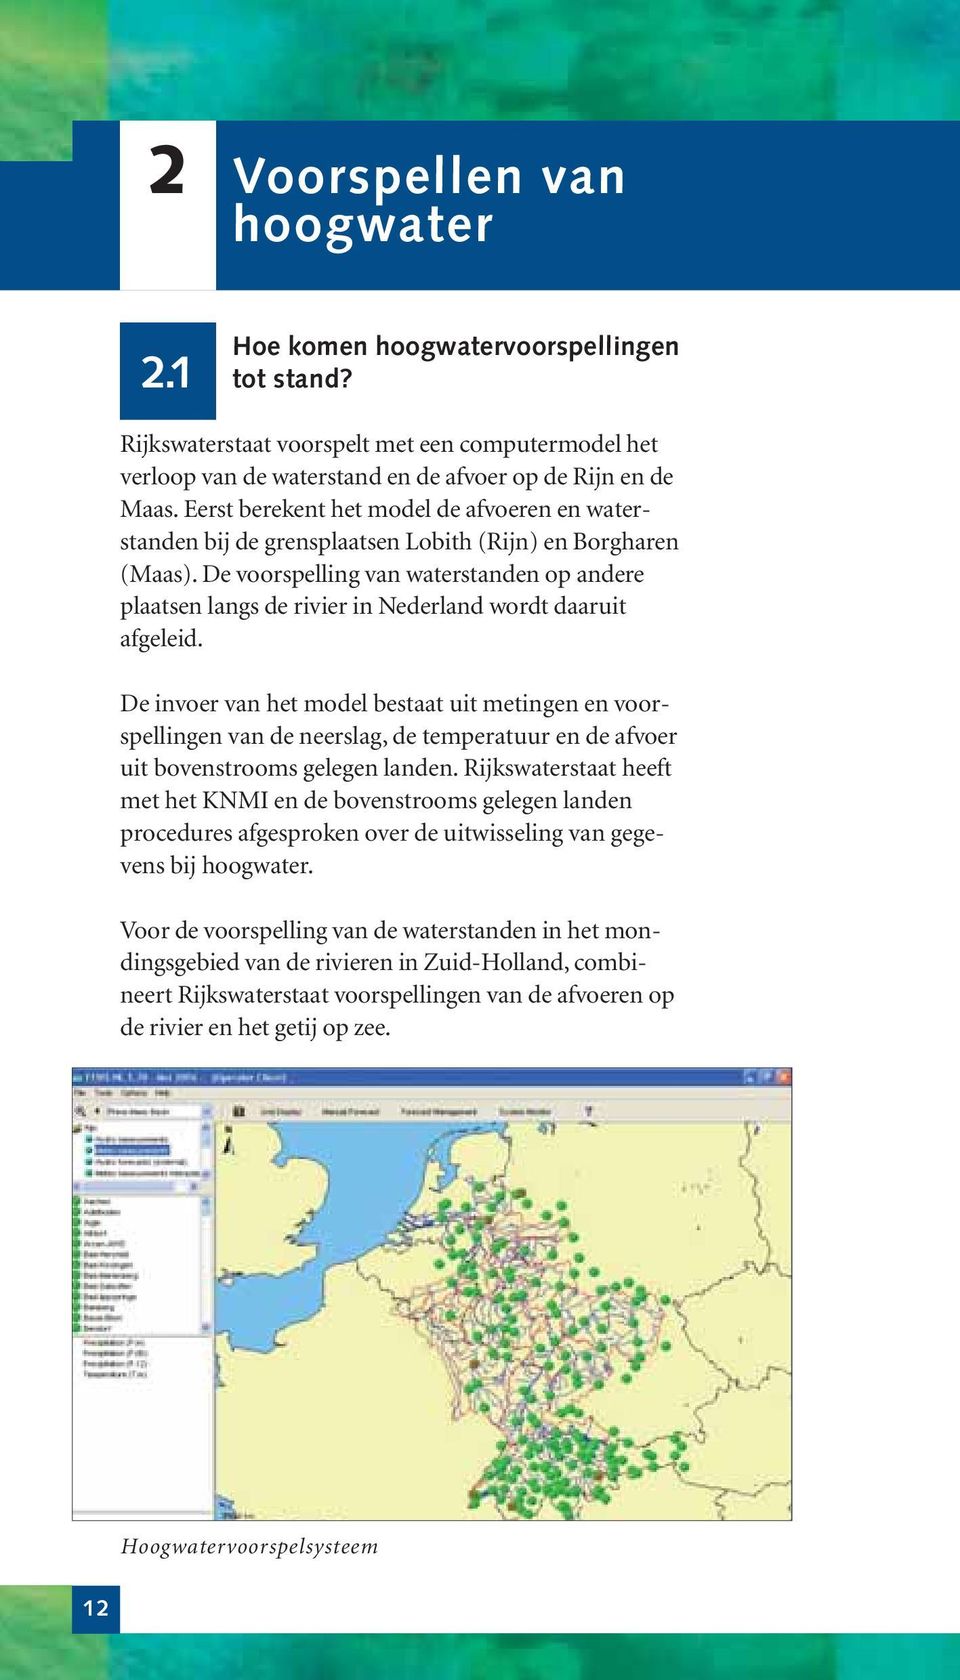 De voorspelling van waterstanden op andere plaatsen langs de rivier in Nederland wordt daaruit afgeleid.